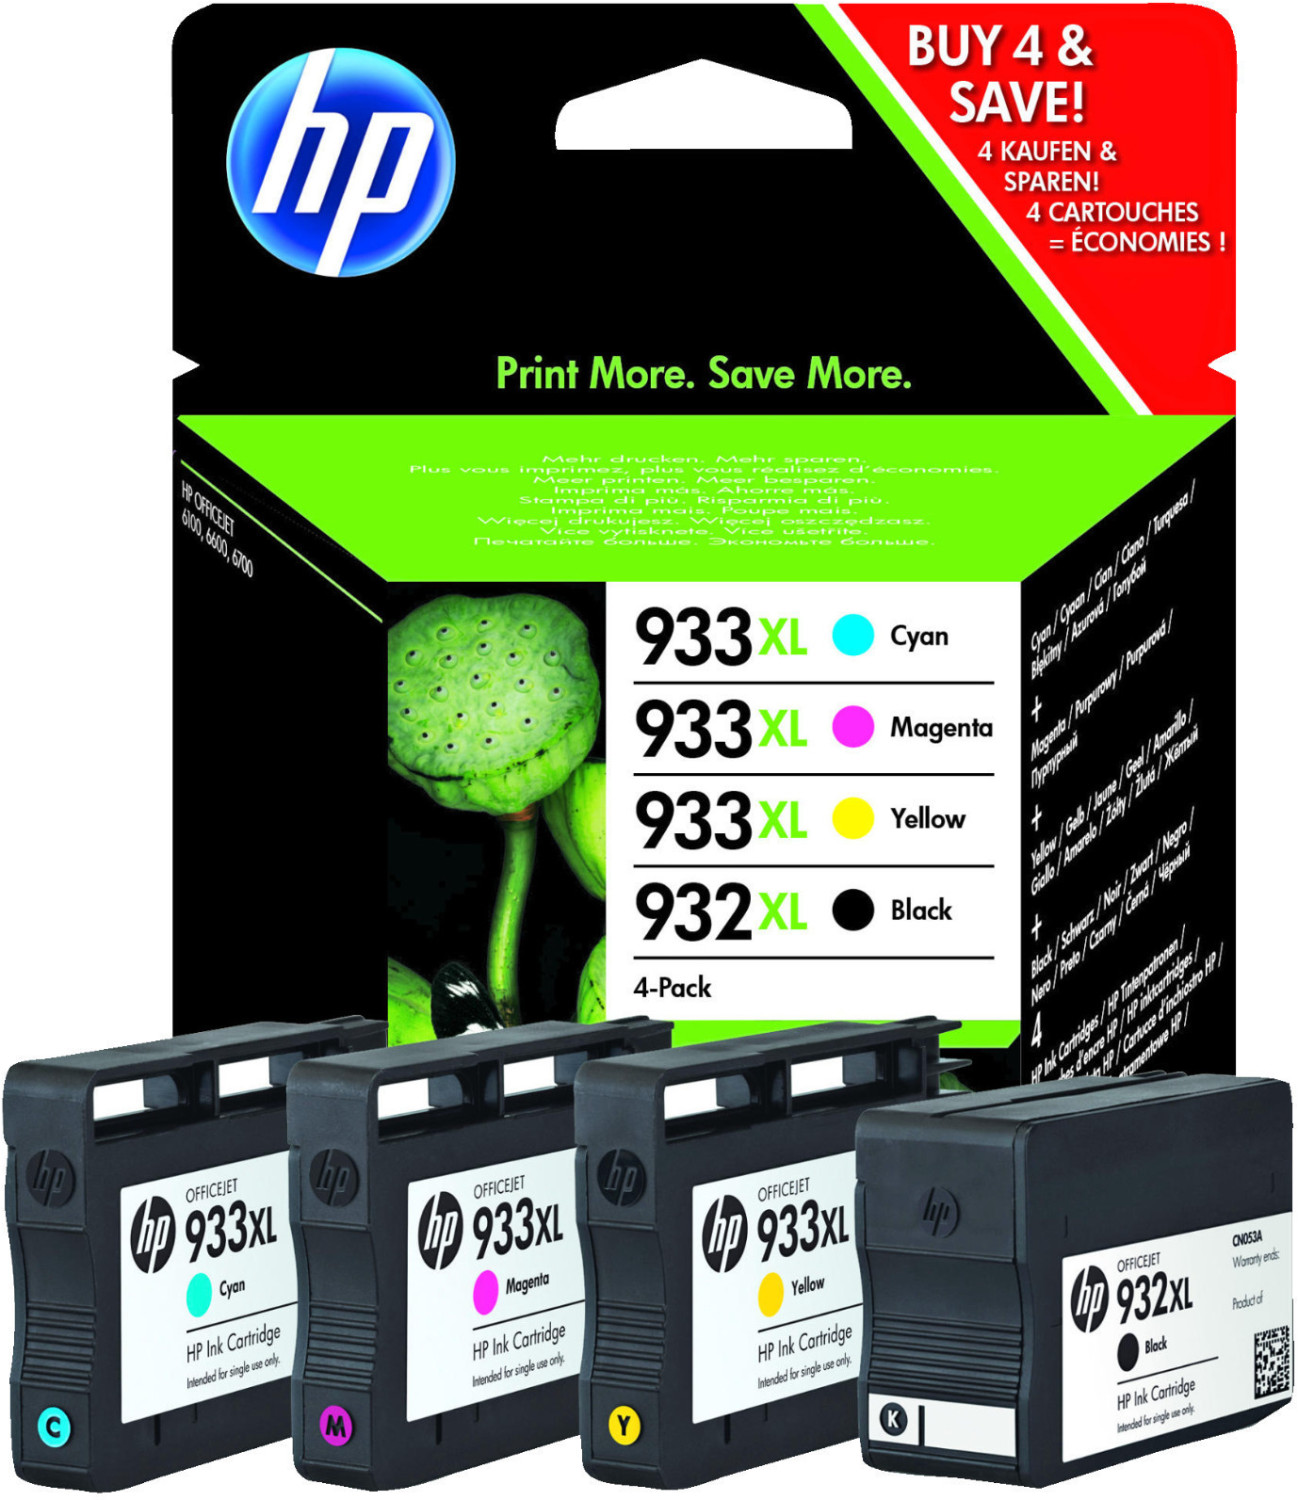 HP 953XL (Noir/Cyan/Magenta/Jaune) au meilleur prix - Comparez les